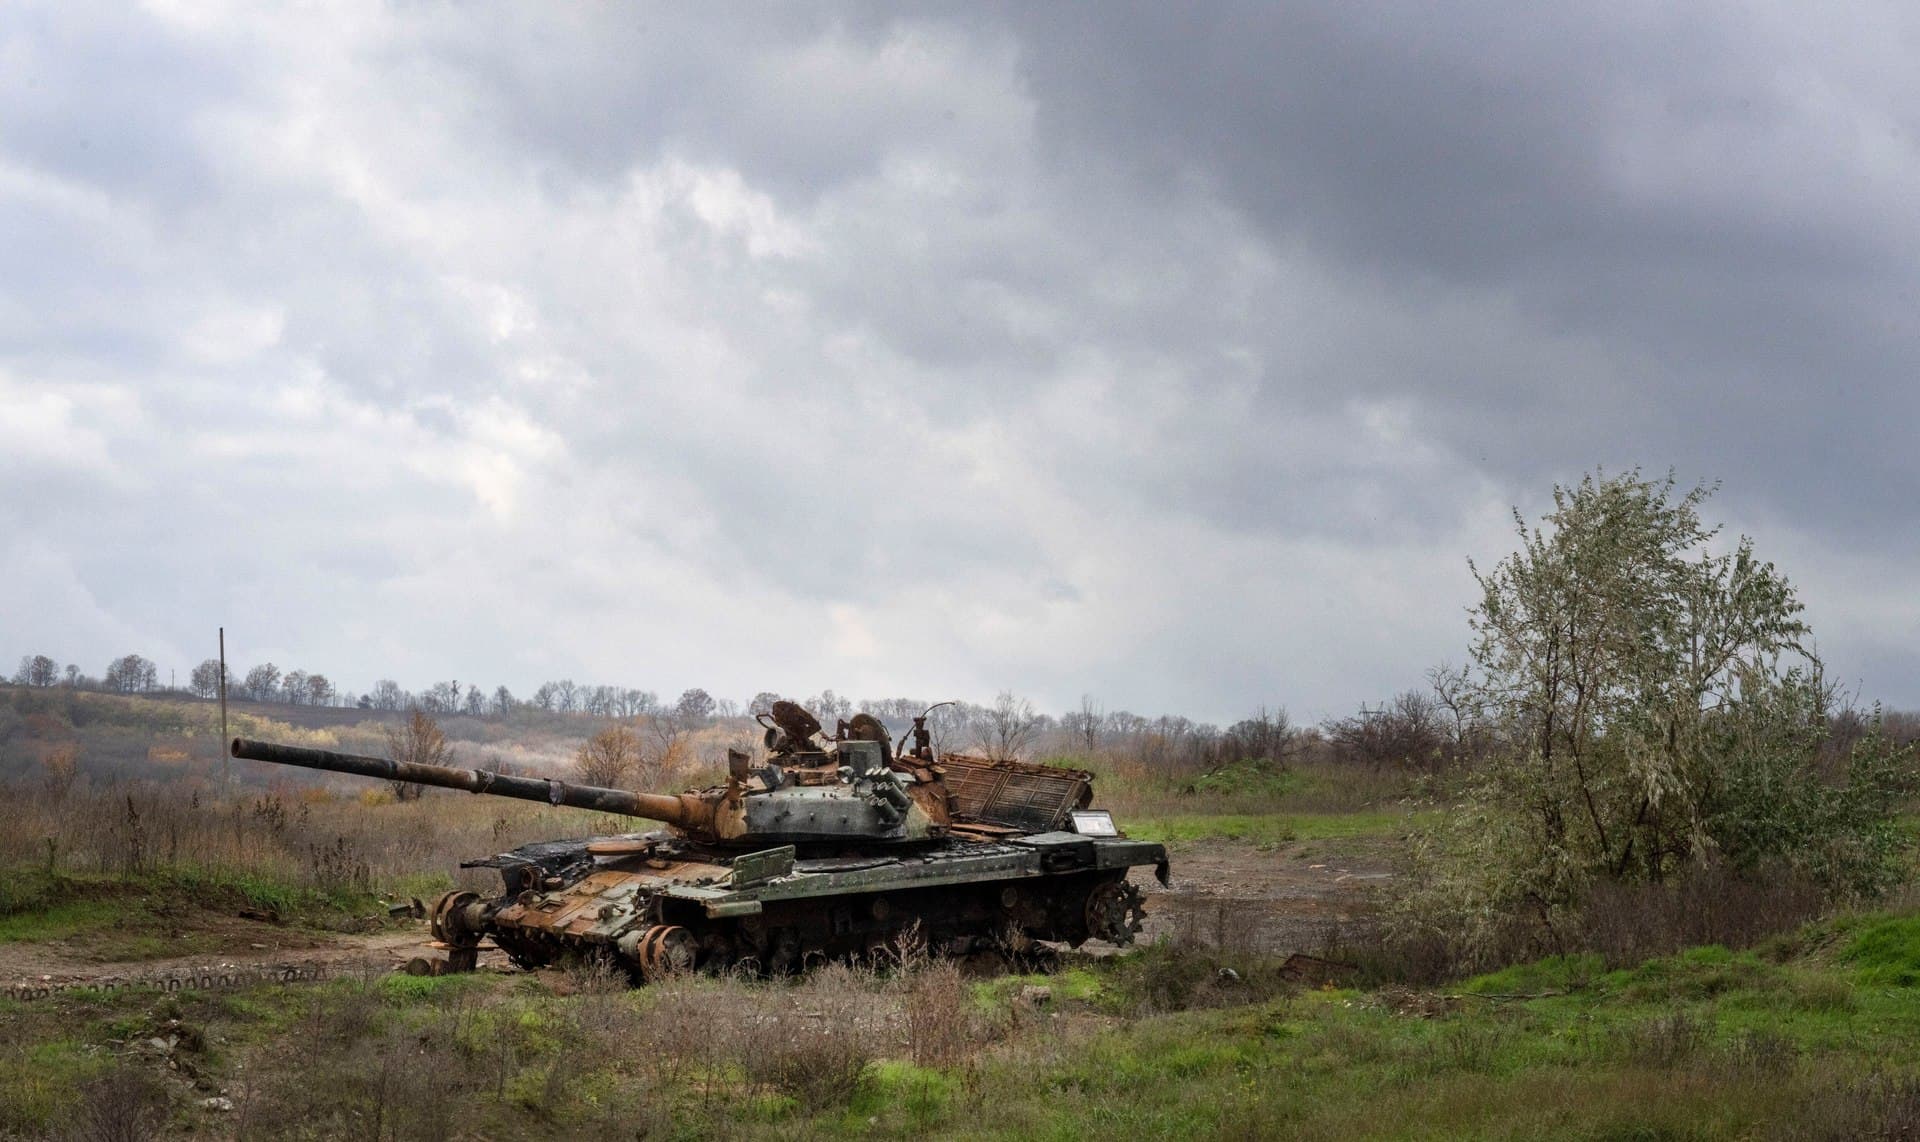 A Russian tank damaged in recent fighting is seen in the field near the recently retaken village of Kamianka